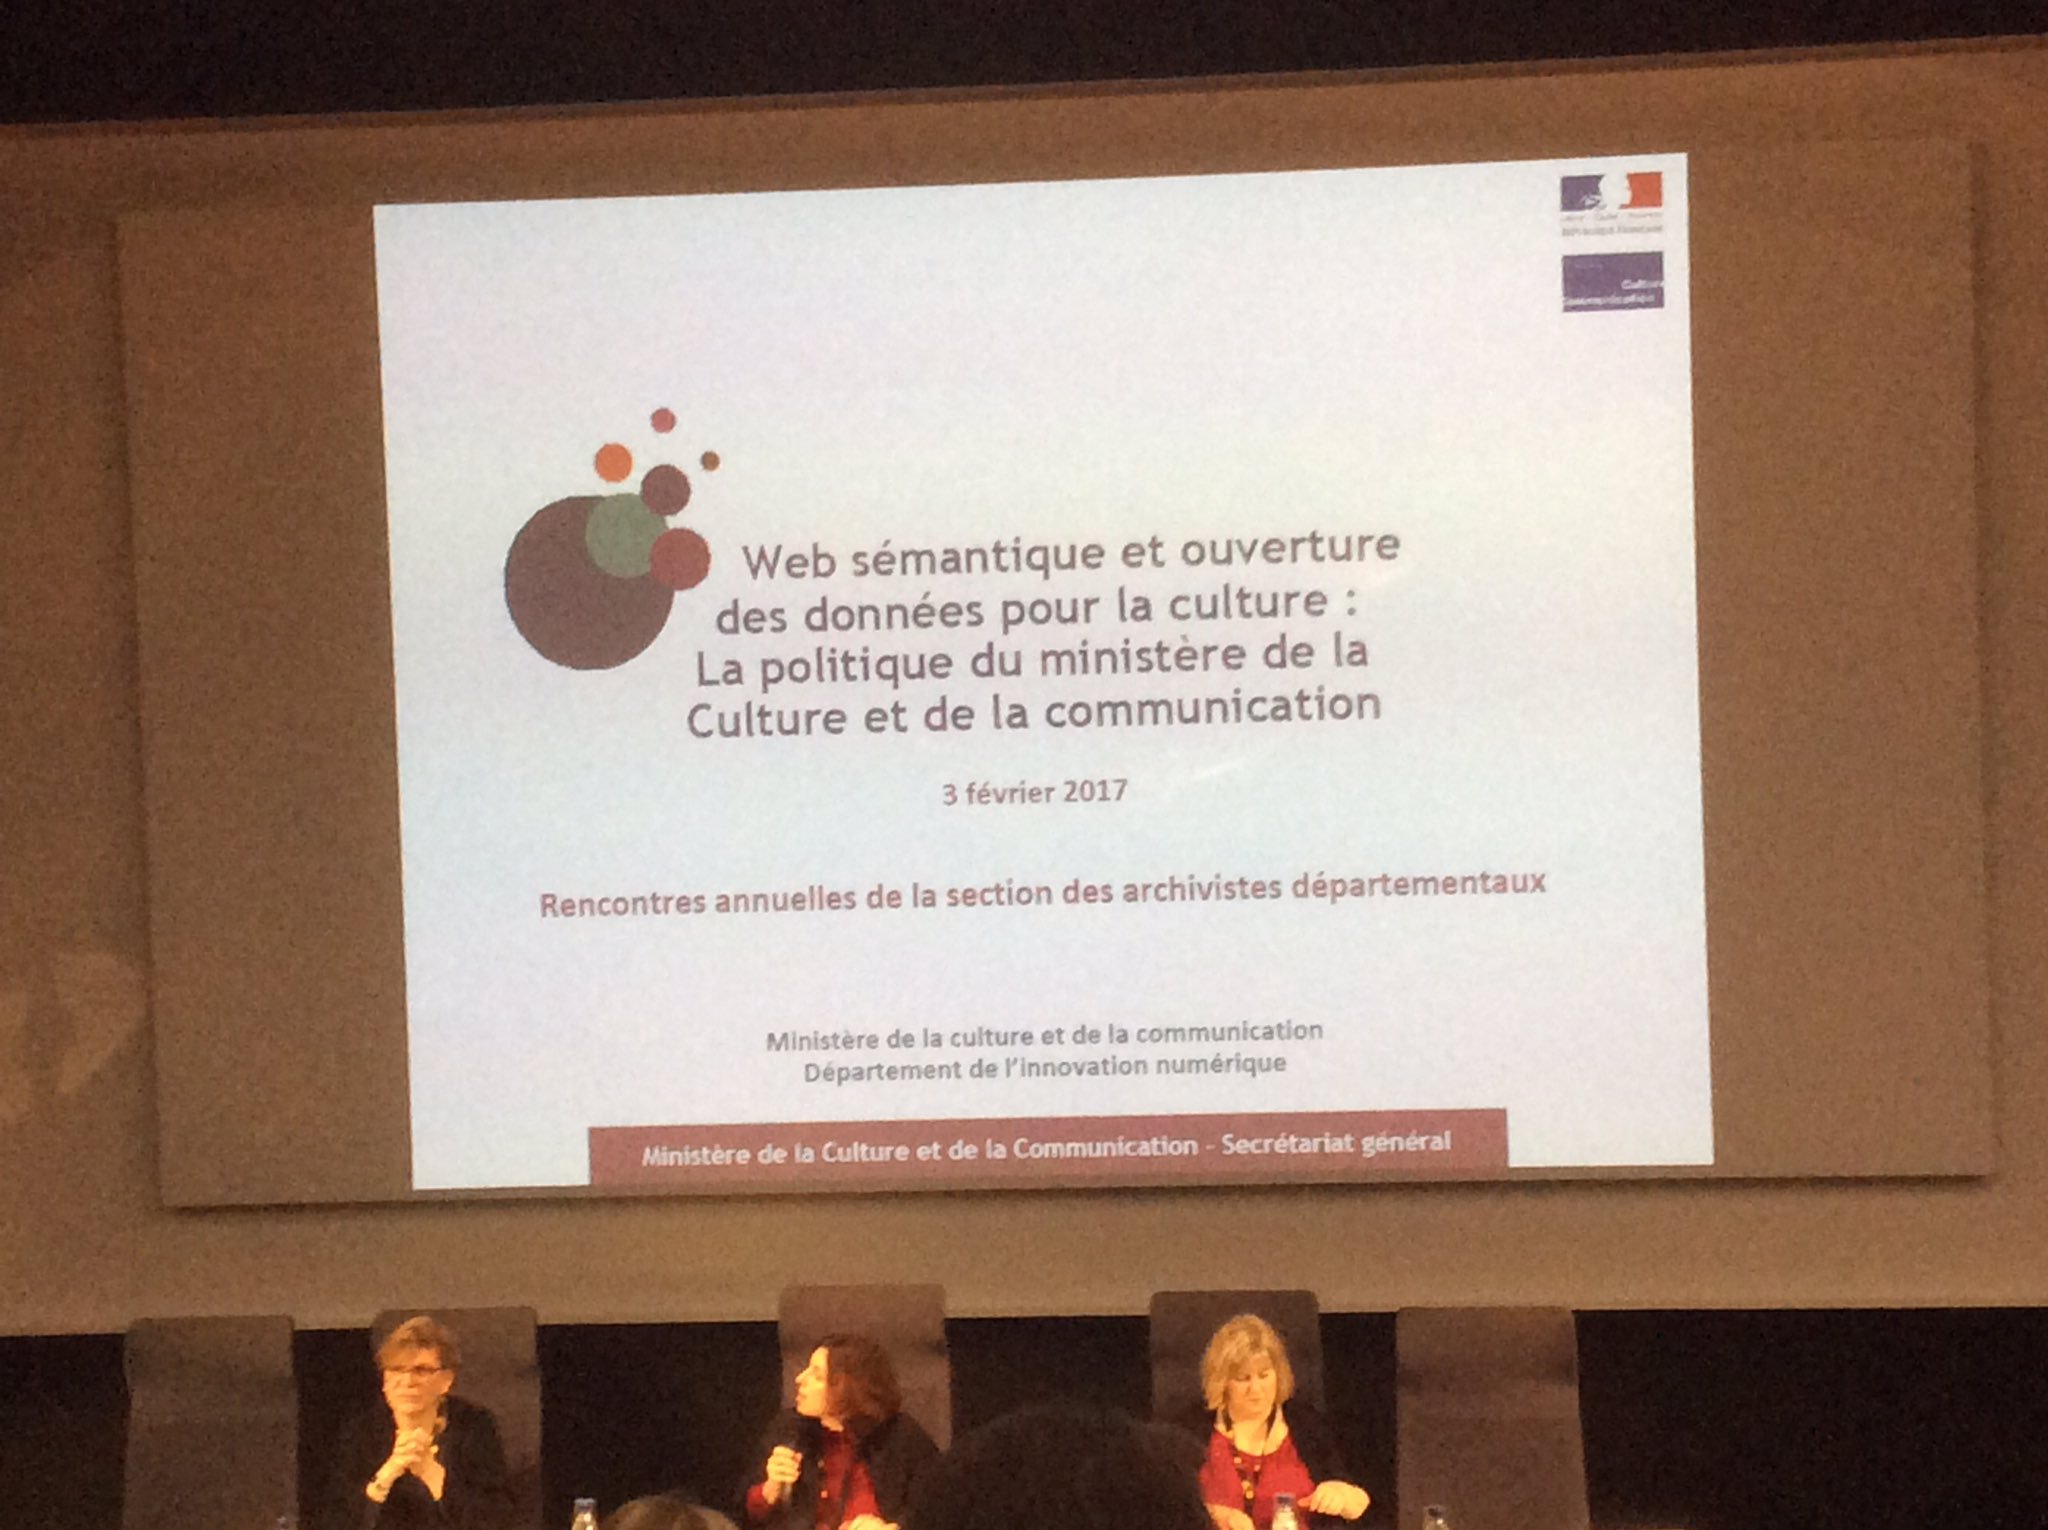 Aux #AAFrasad17 on parle #OpenData et #webSem pour les #données culturelles ce matin @Archivistes_AAF @MinistereCC https://t.co/1aw2zcgrsI